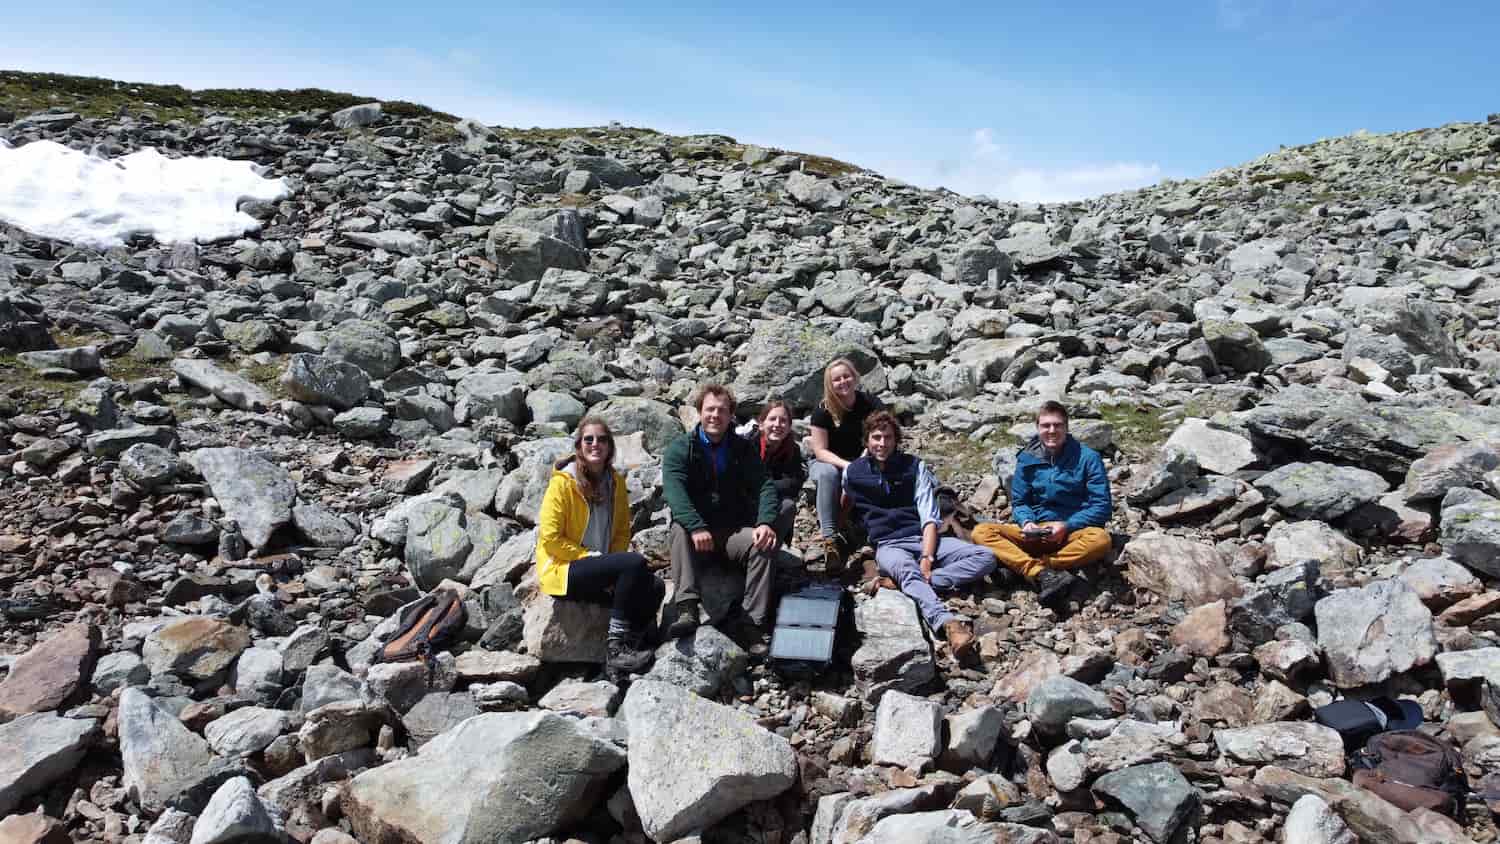 photo de groupe de touristes sur une montagne rocheuse ensoleillée avec une randonnée de panneaux solaires